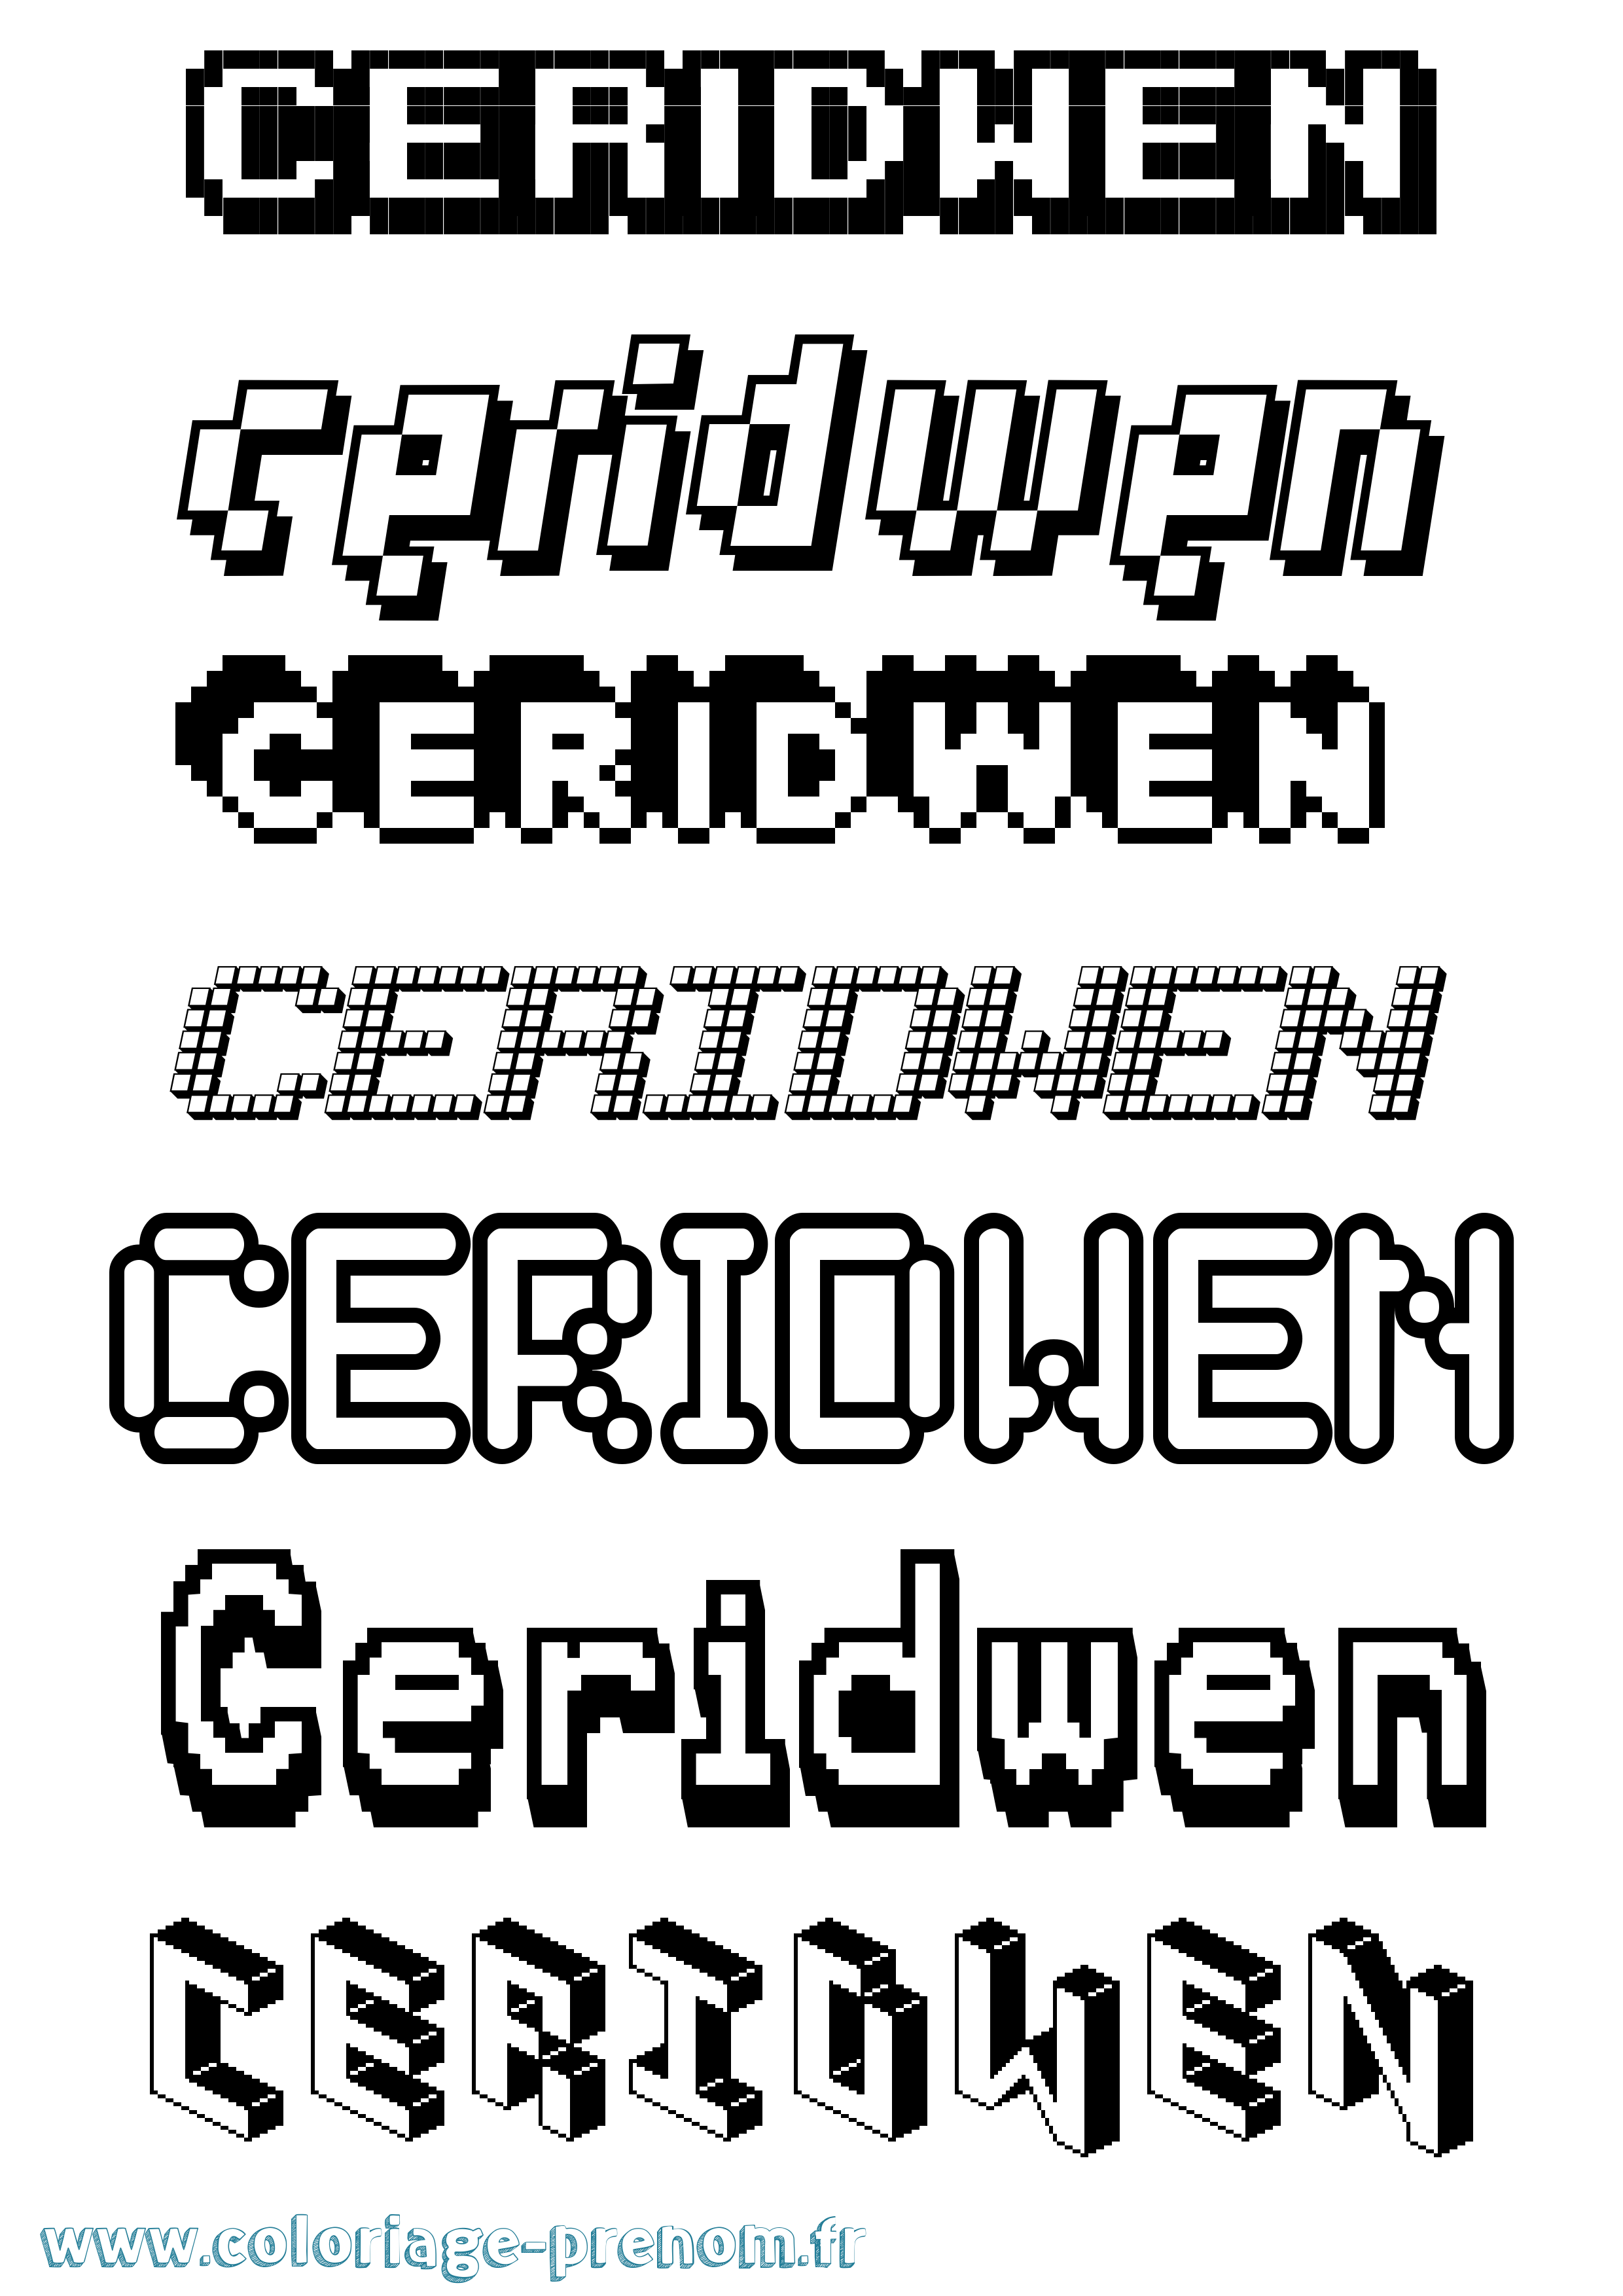 Coloriage prénom Ceridwen Pixel